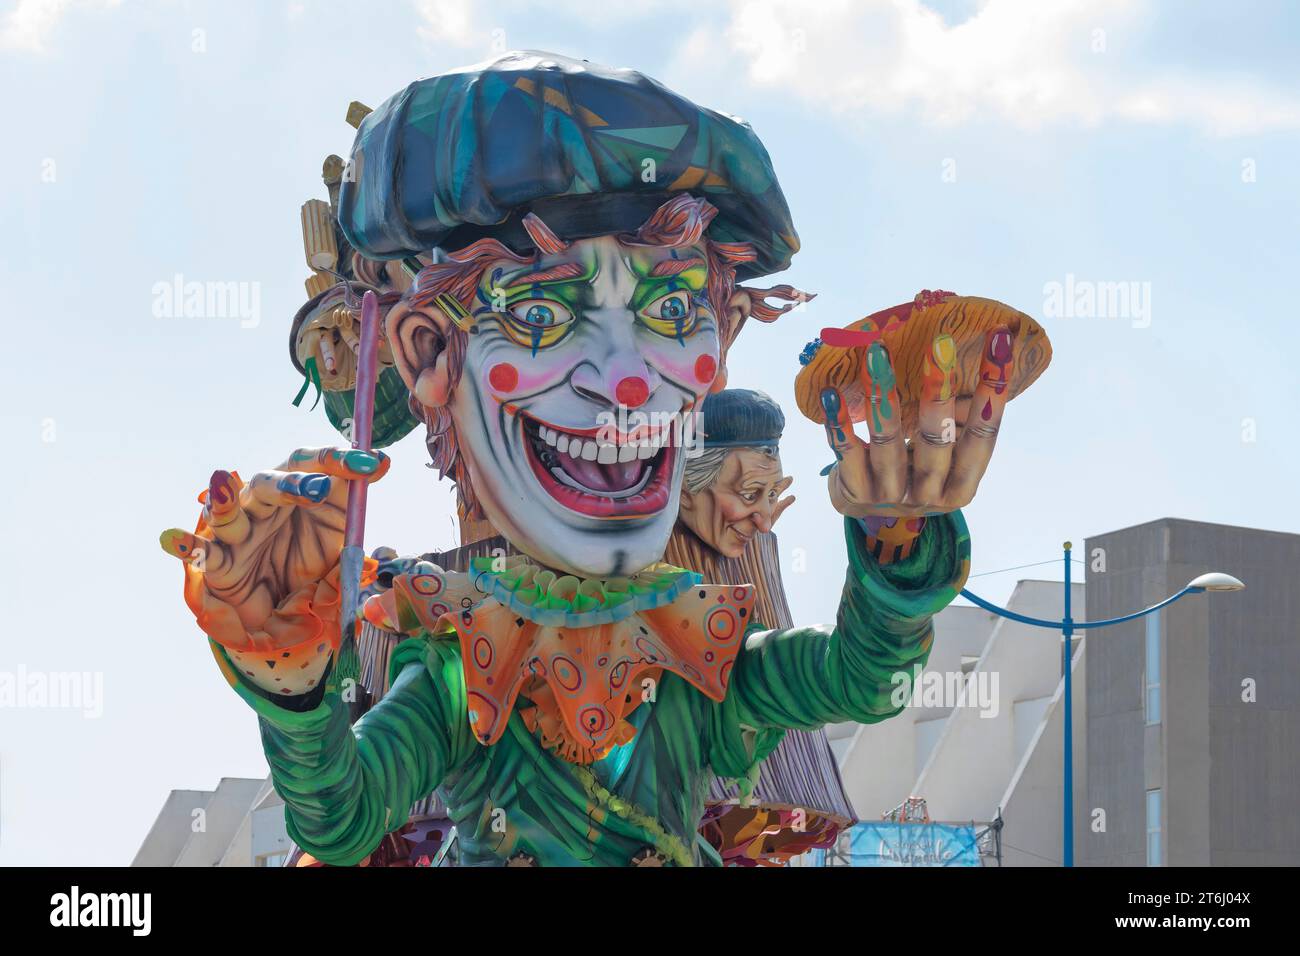 Flotteur de carnaval, Sciacca, district d'Agrigente, Sicile, Italie Banque D'Images